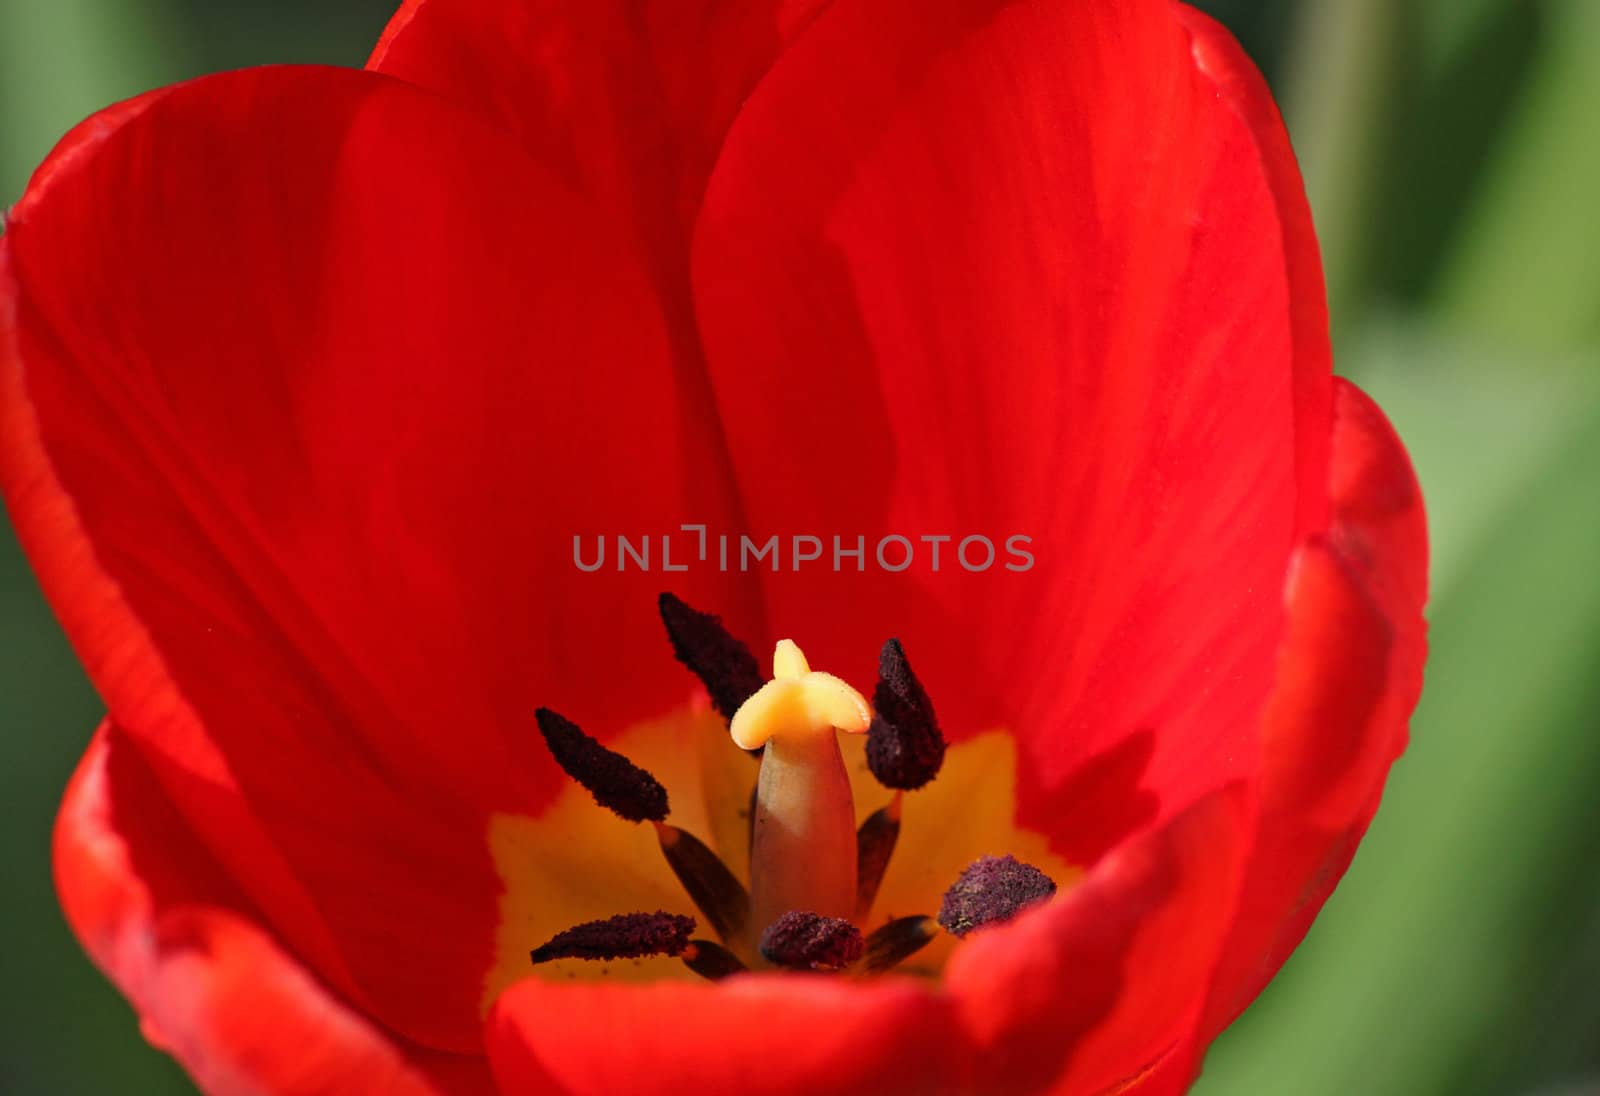 close up of red tulip